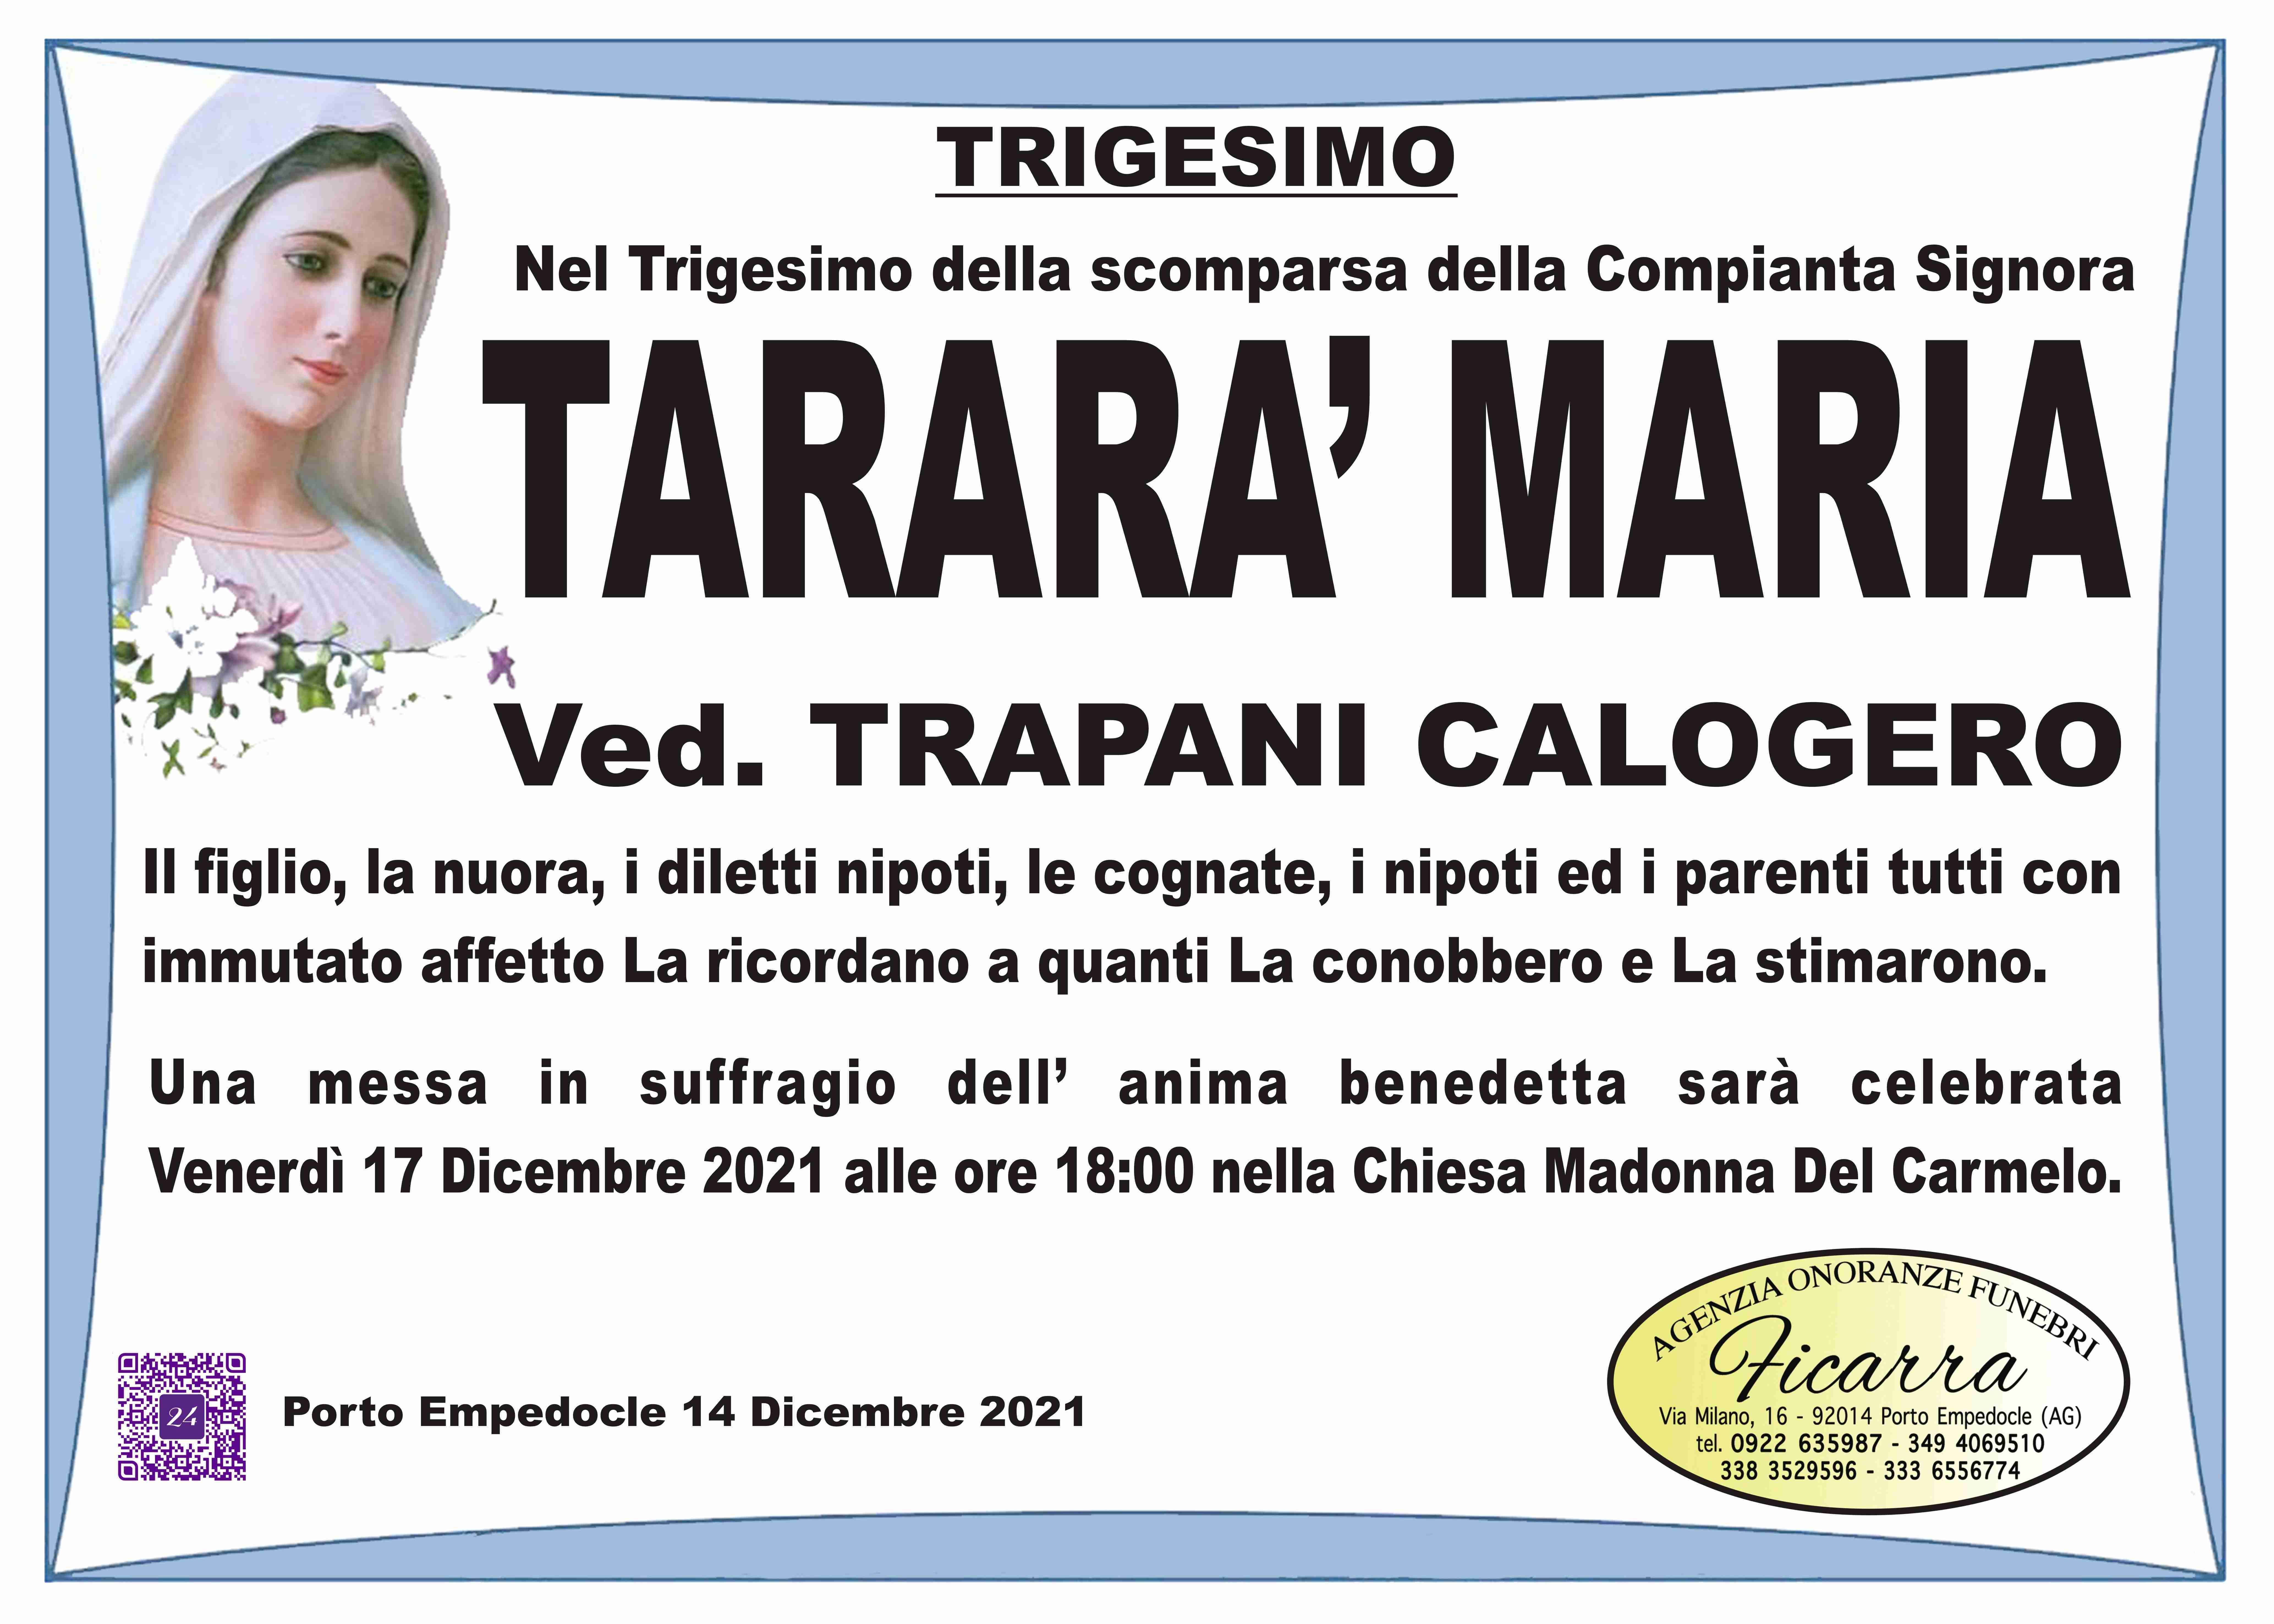 Maria Tararà